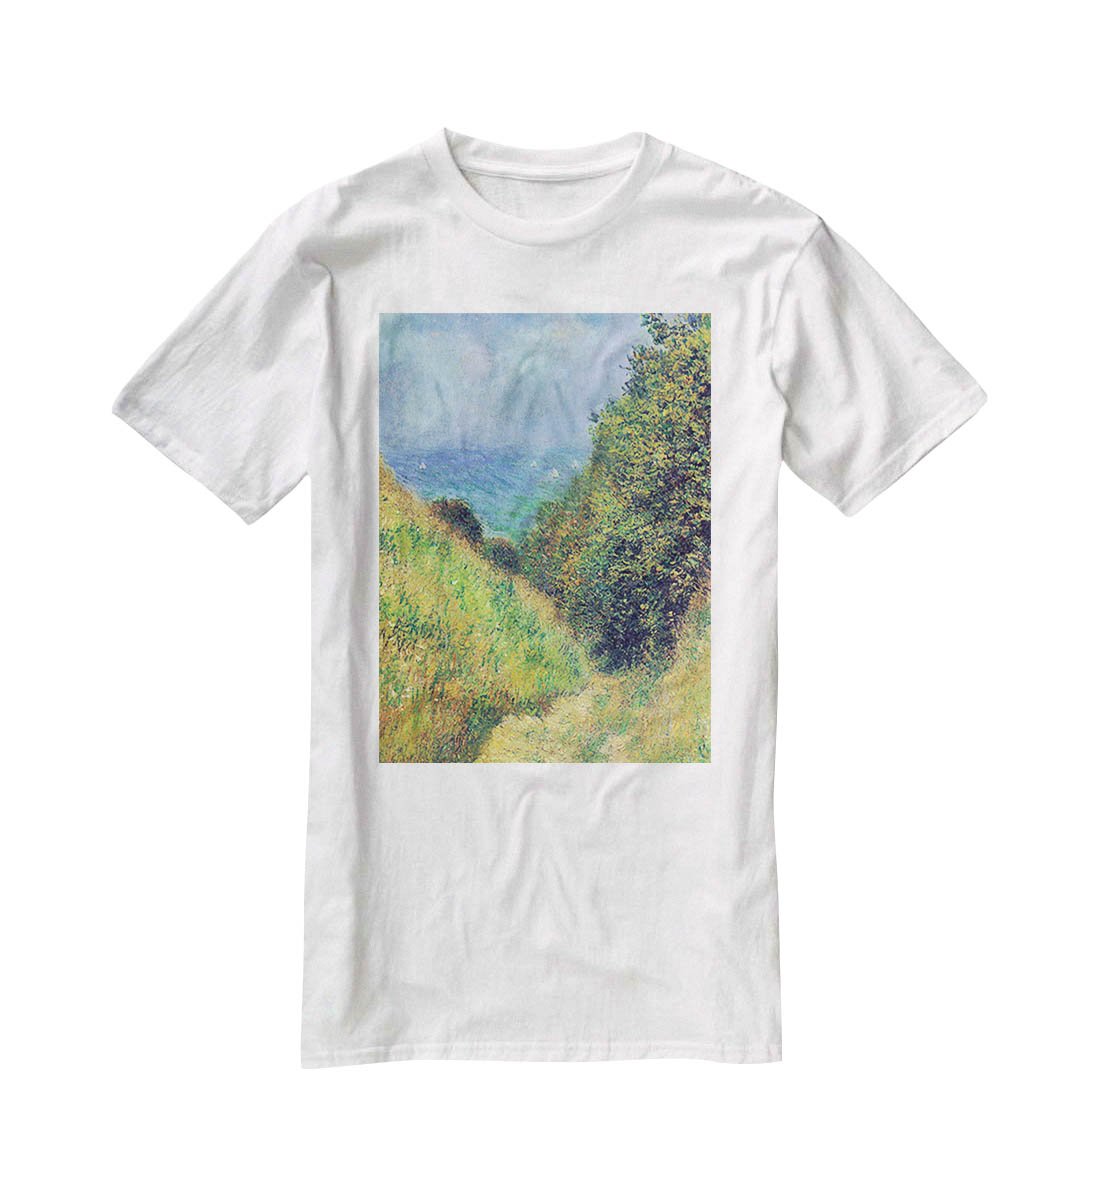 Pourville 2 by Monet T-Shirt - Canvas Art Rocks - 5